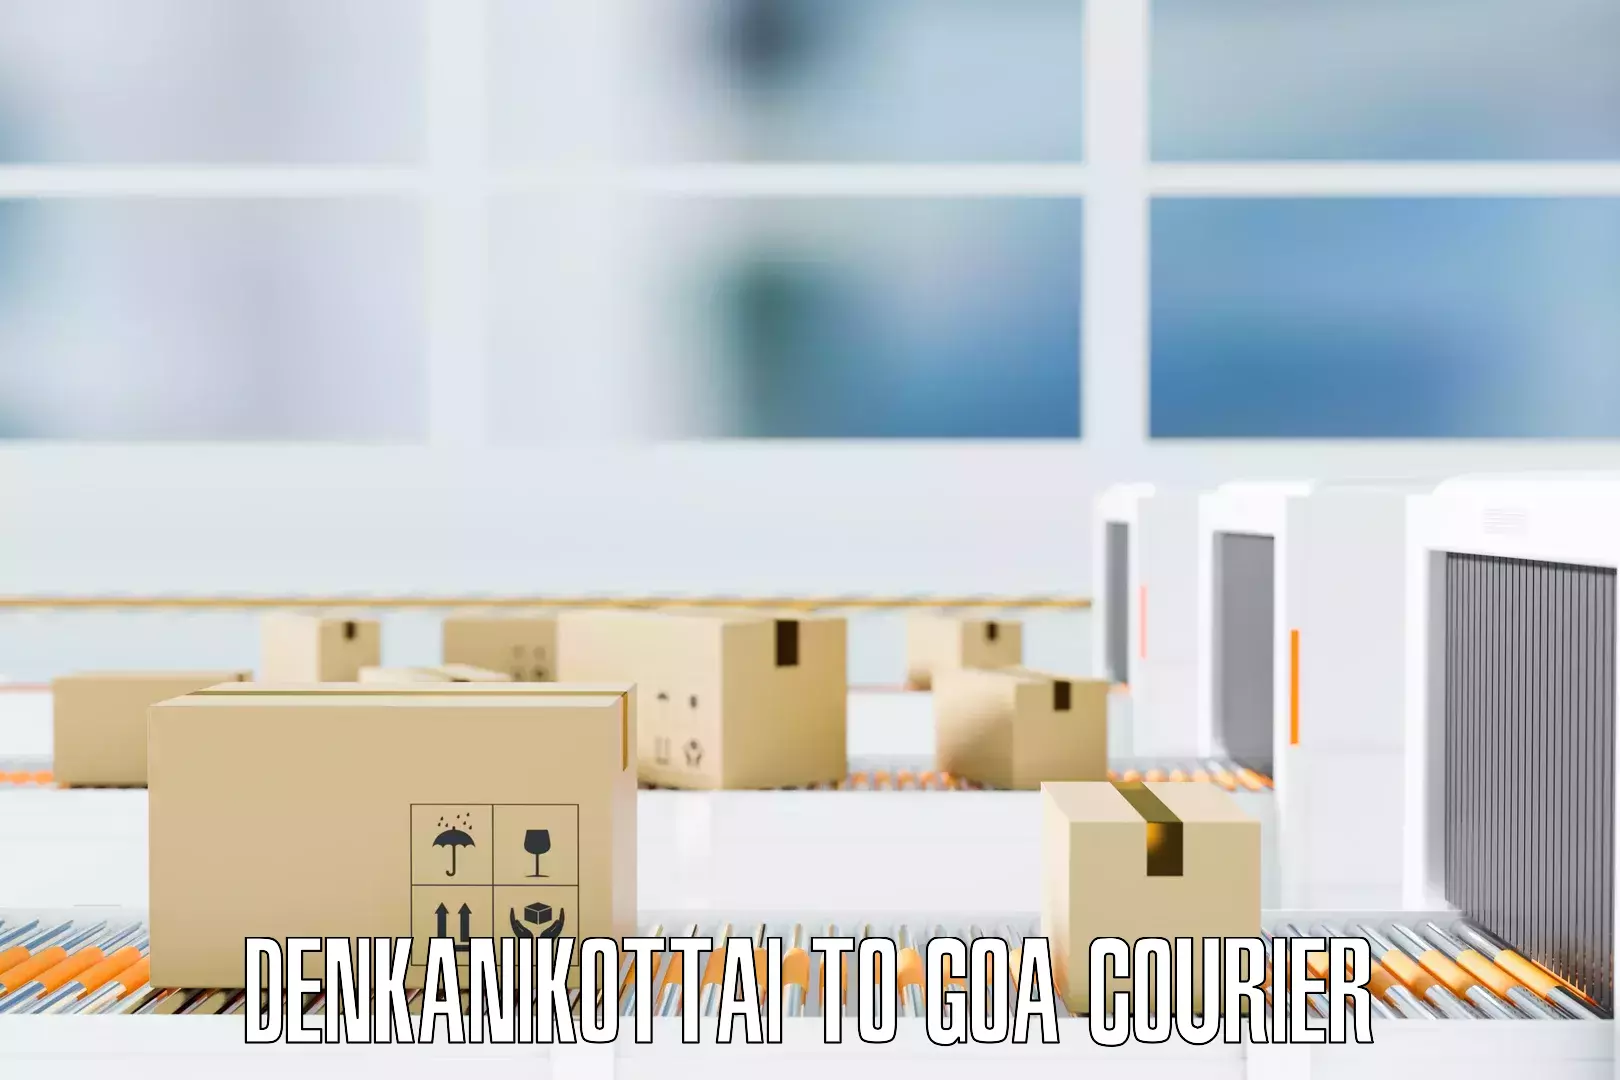 Furniture moving plans Denkanikottai to Goa University